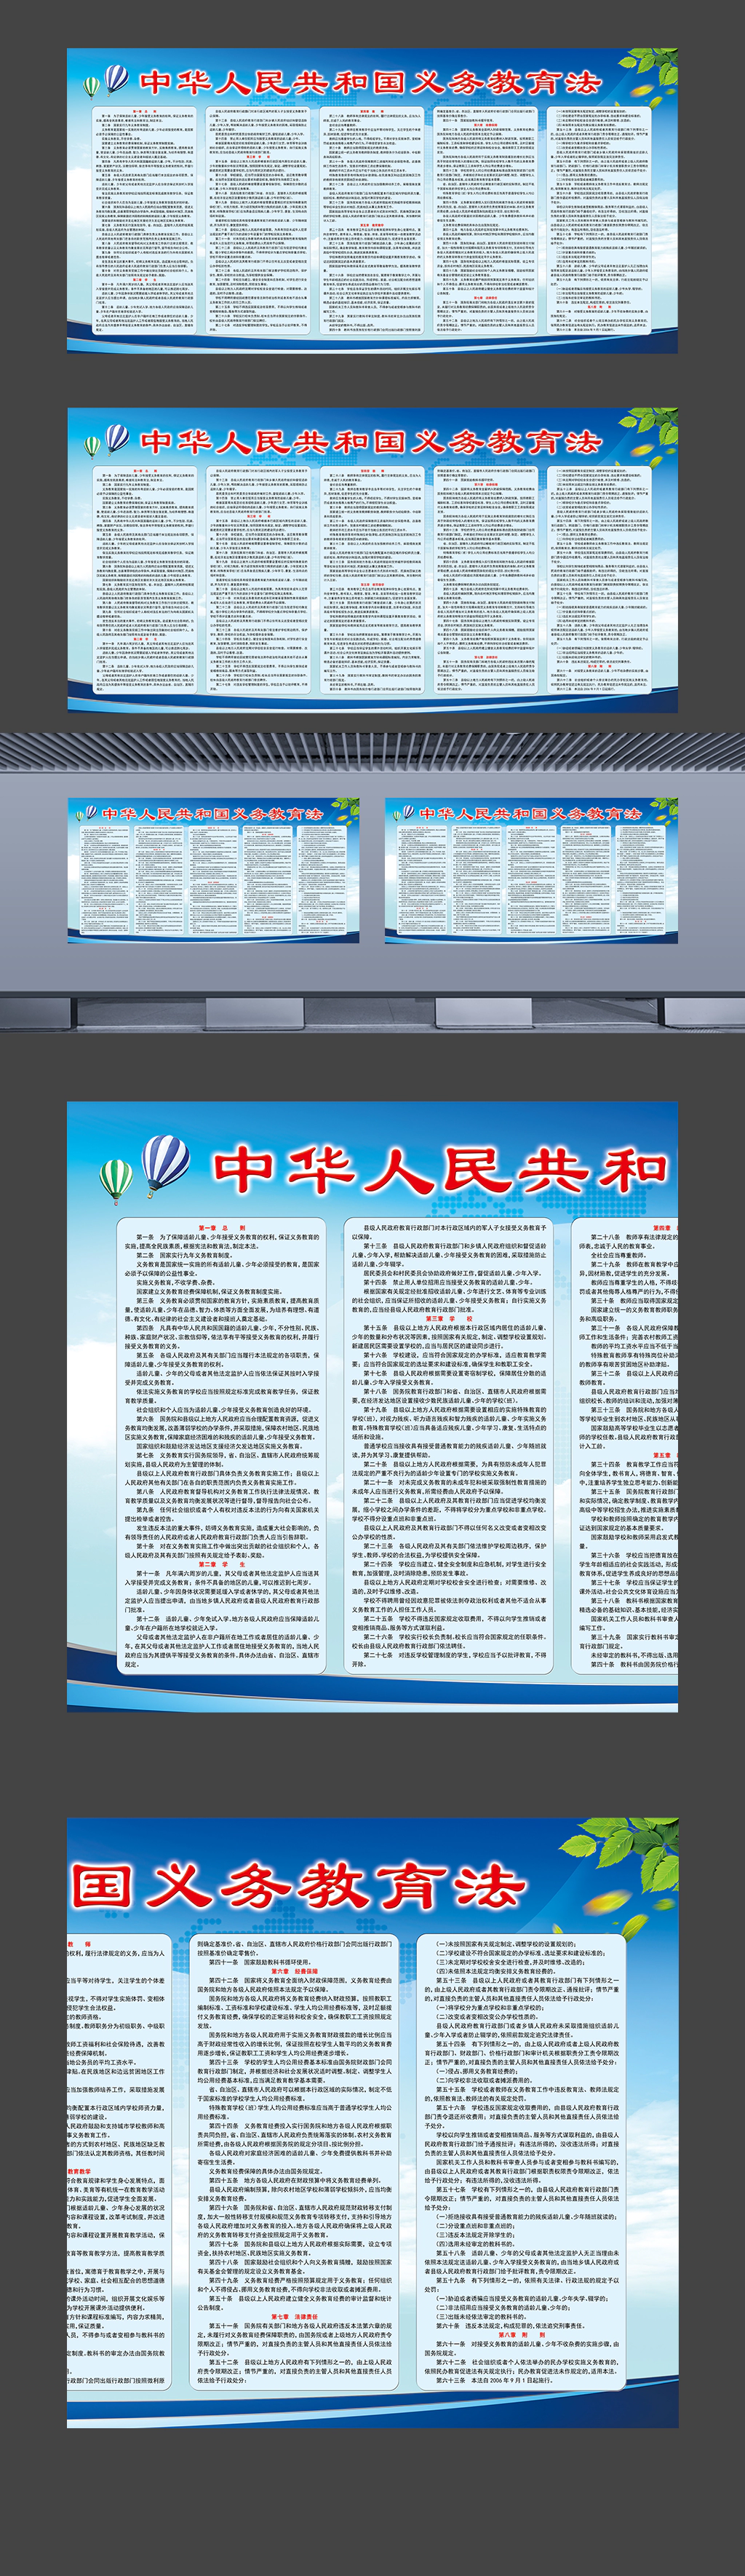 中华人民共和国义务教育法带文字内容展板